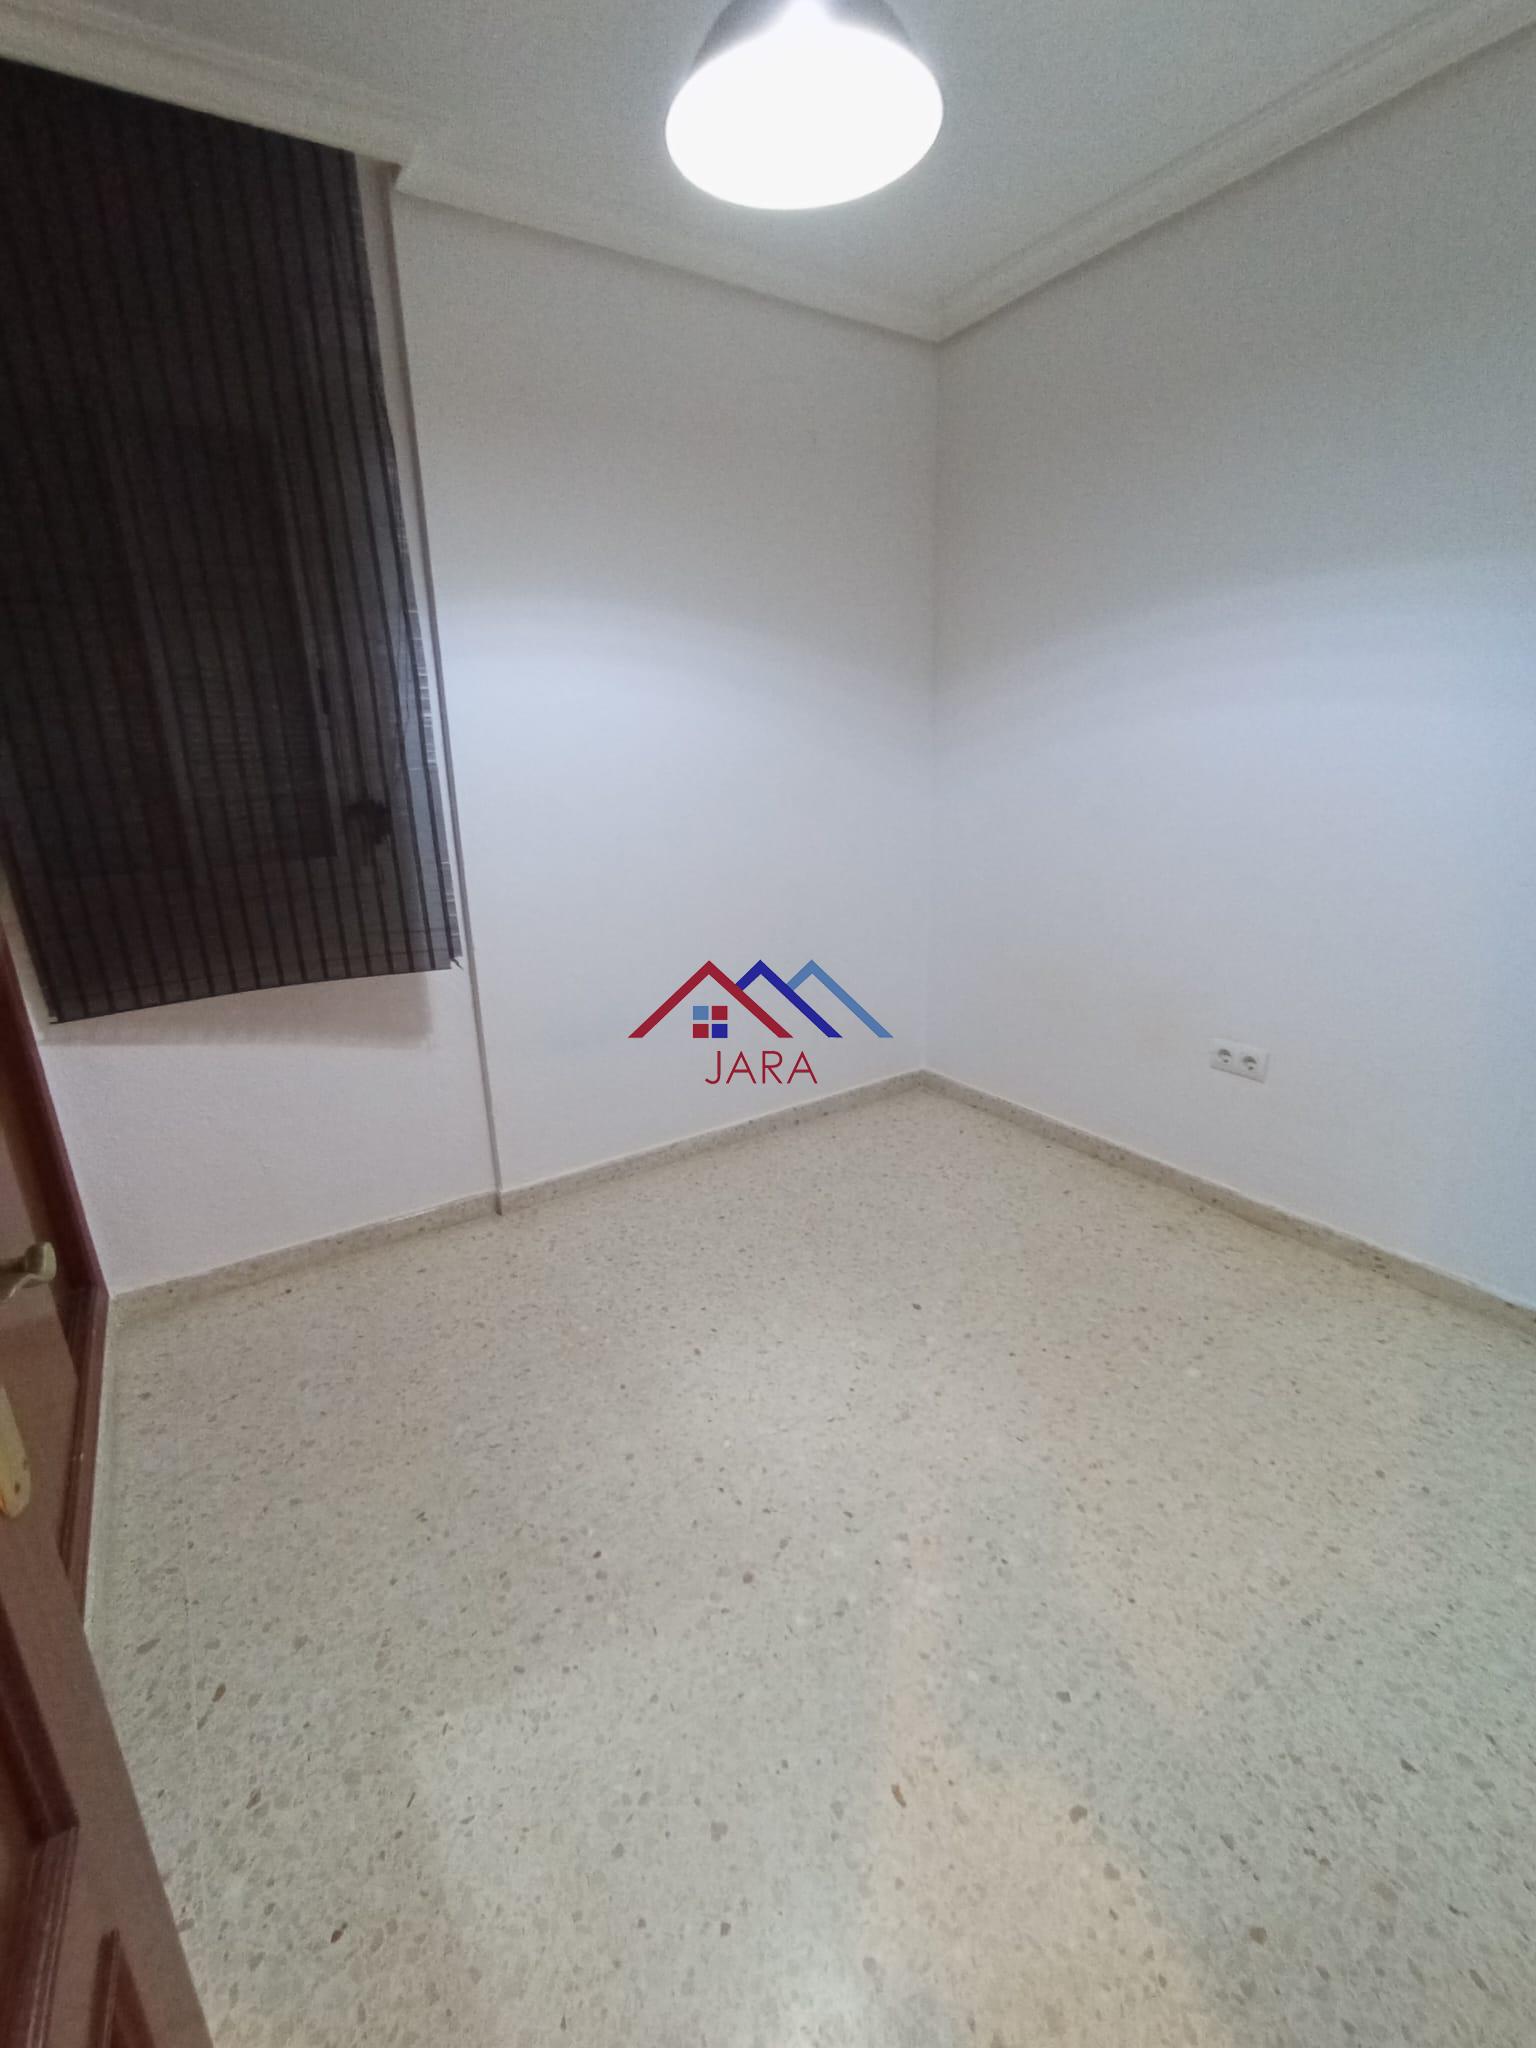 Alokairua  apartamentu  Jerez de la Frontera